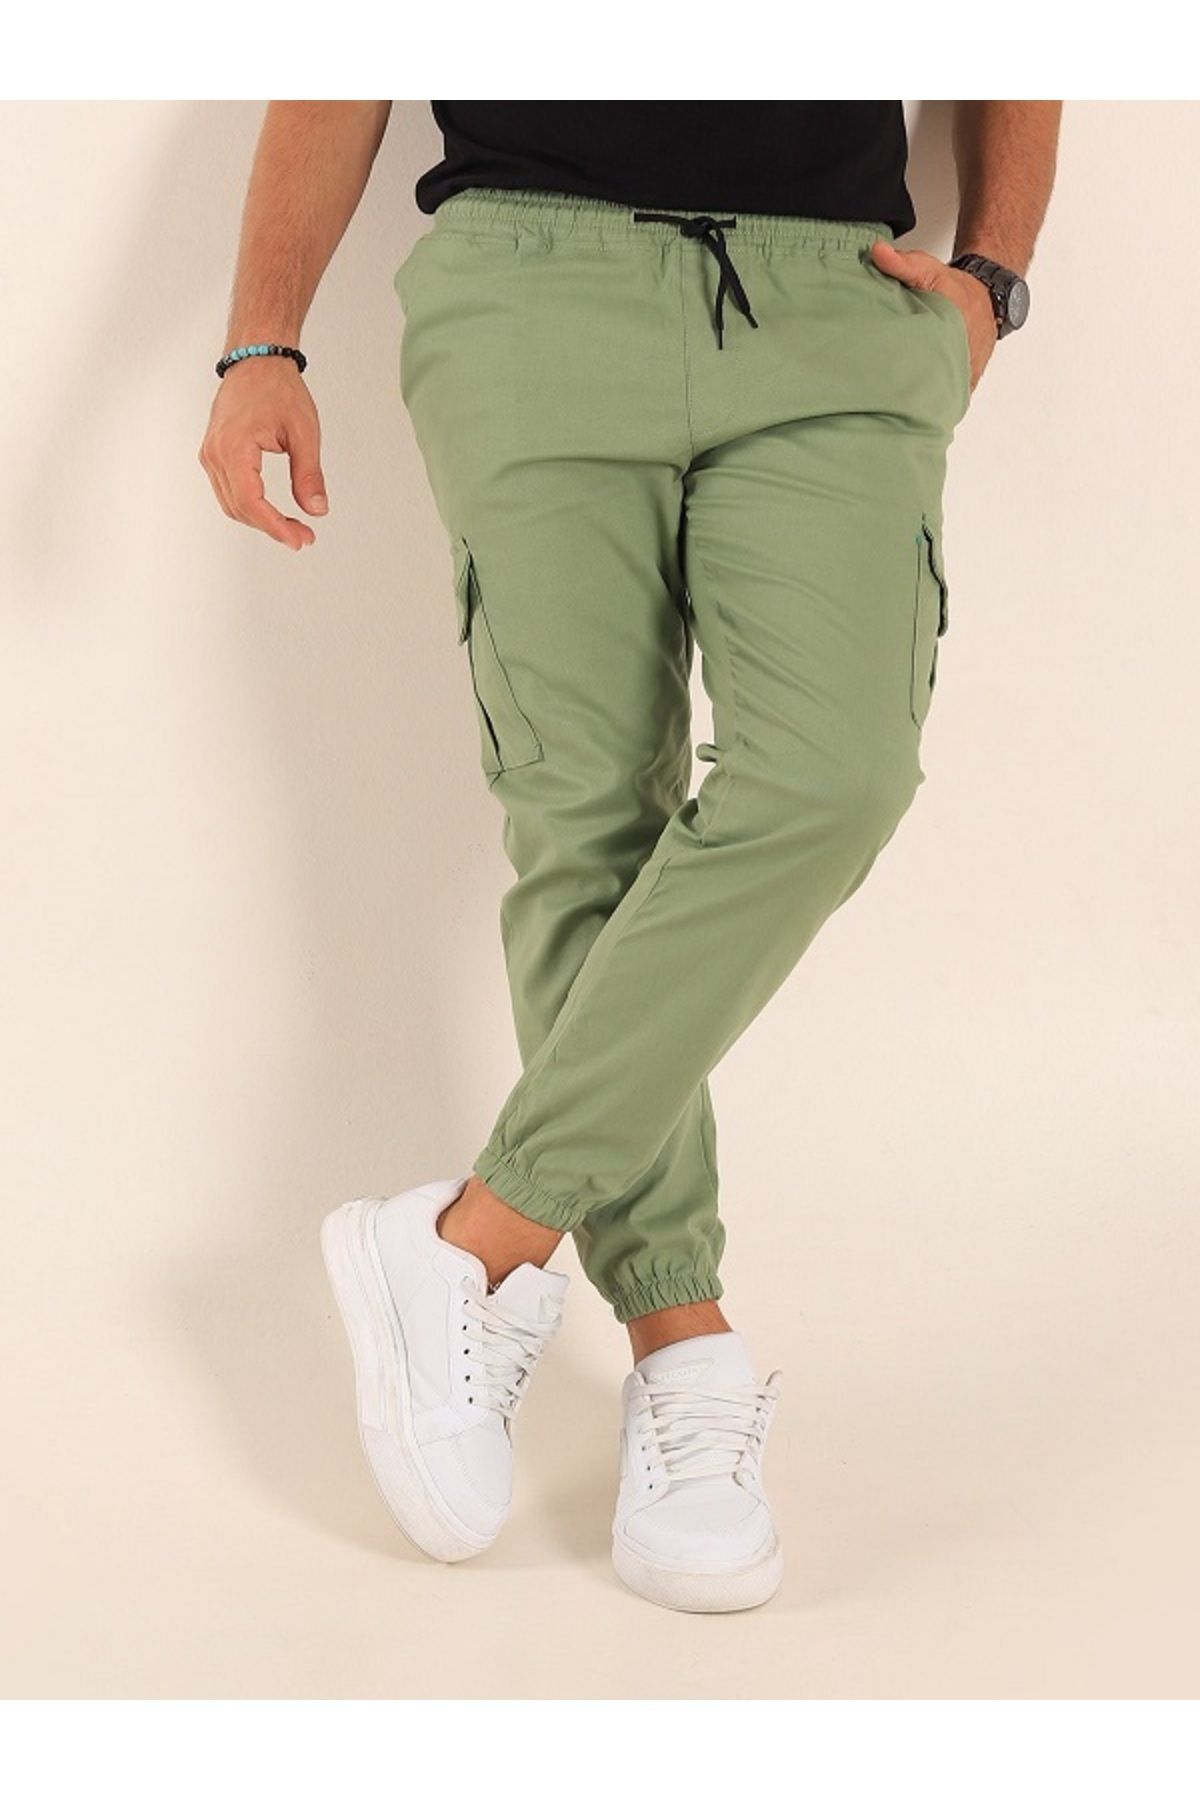 Genel Markalar likralı beli ve paçası lastikli yeşil kargo pantolon